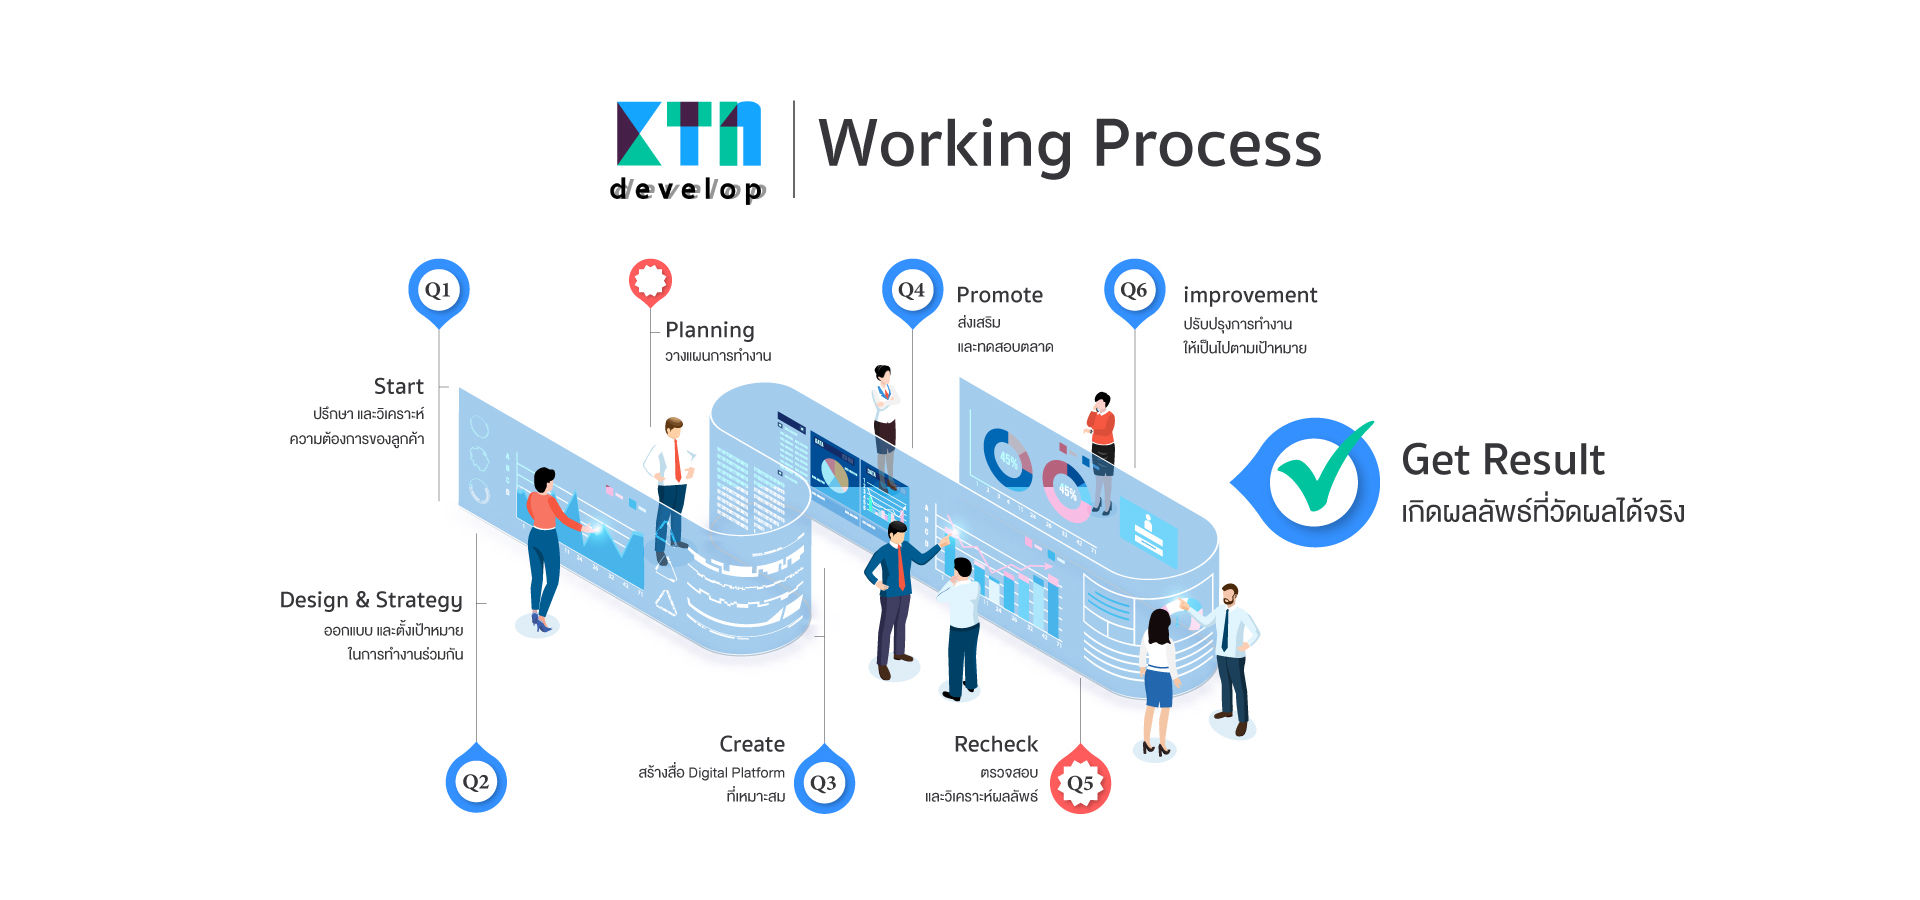 Ktn webdesign working Process